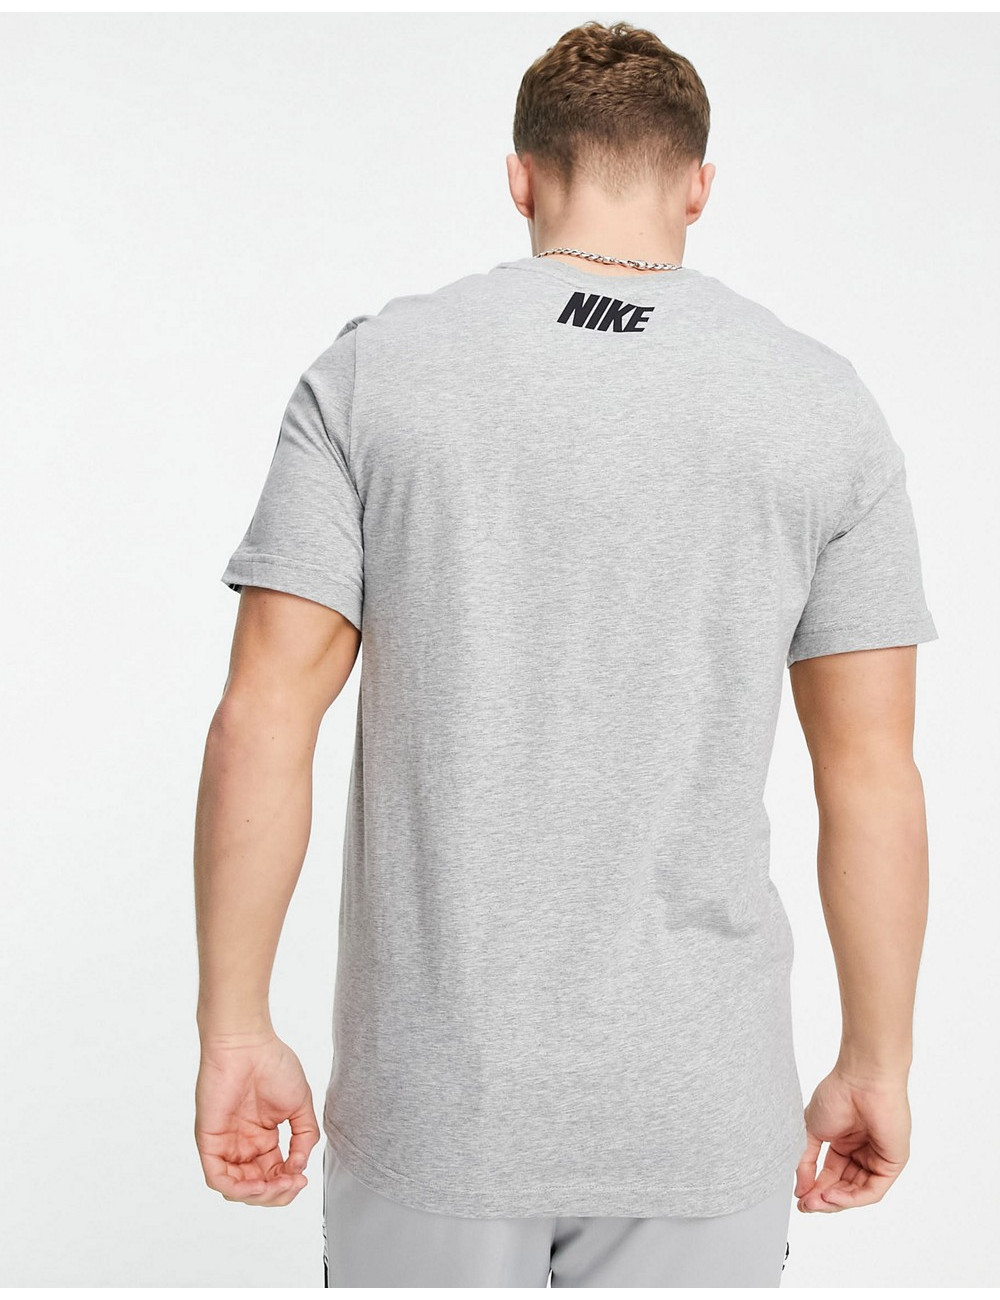 Nike Repeat taping t-shirt...